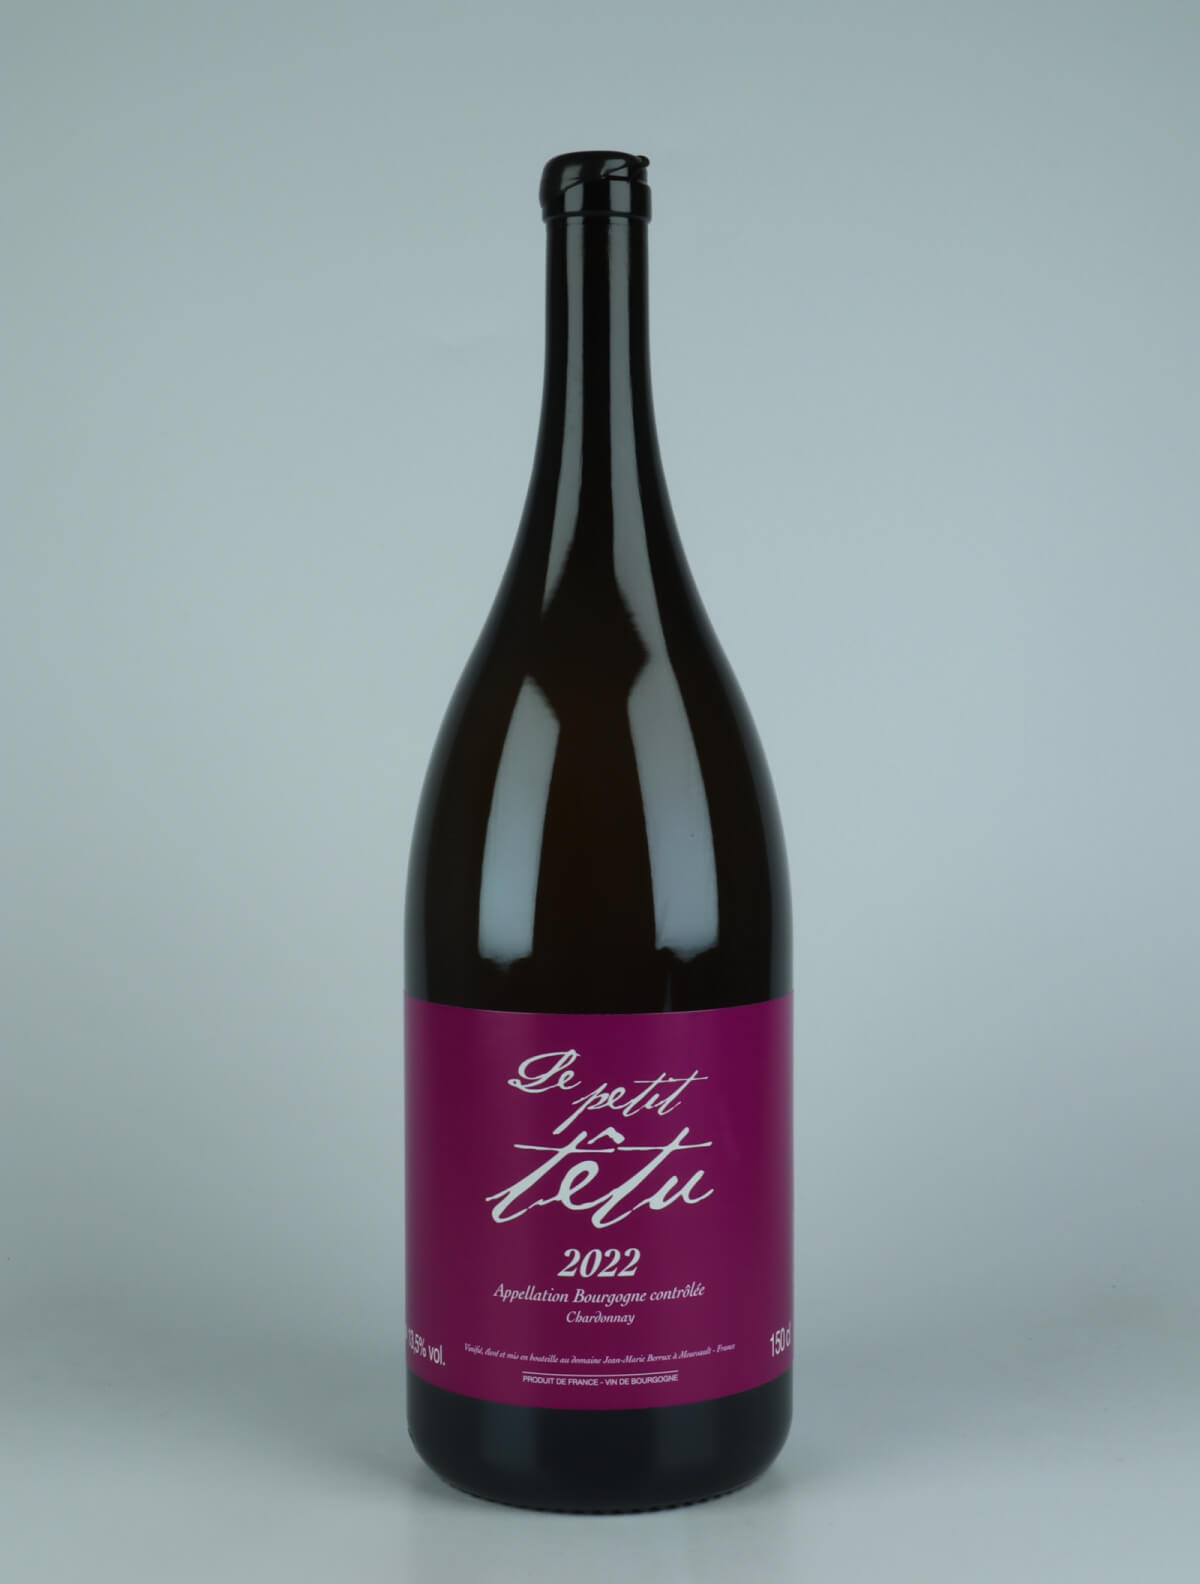 En flaske 2022 Le Petit Têtu - Magnum Hvidvin fra Jean-Marie Berrux, Bourgogne i Frankrig